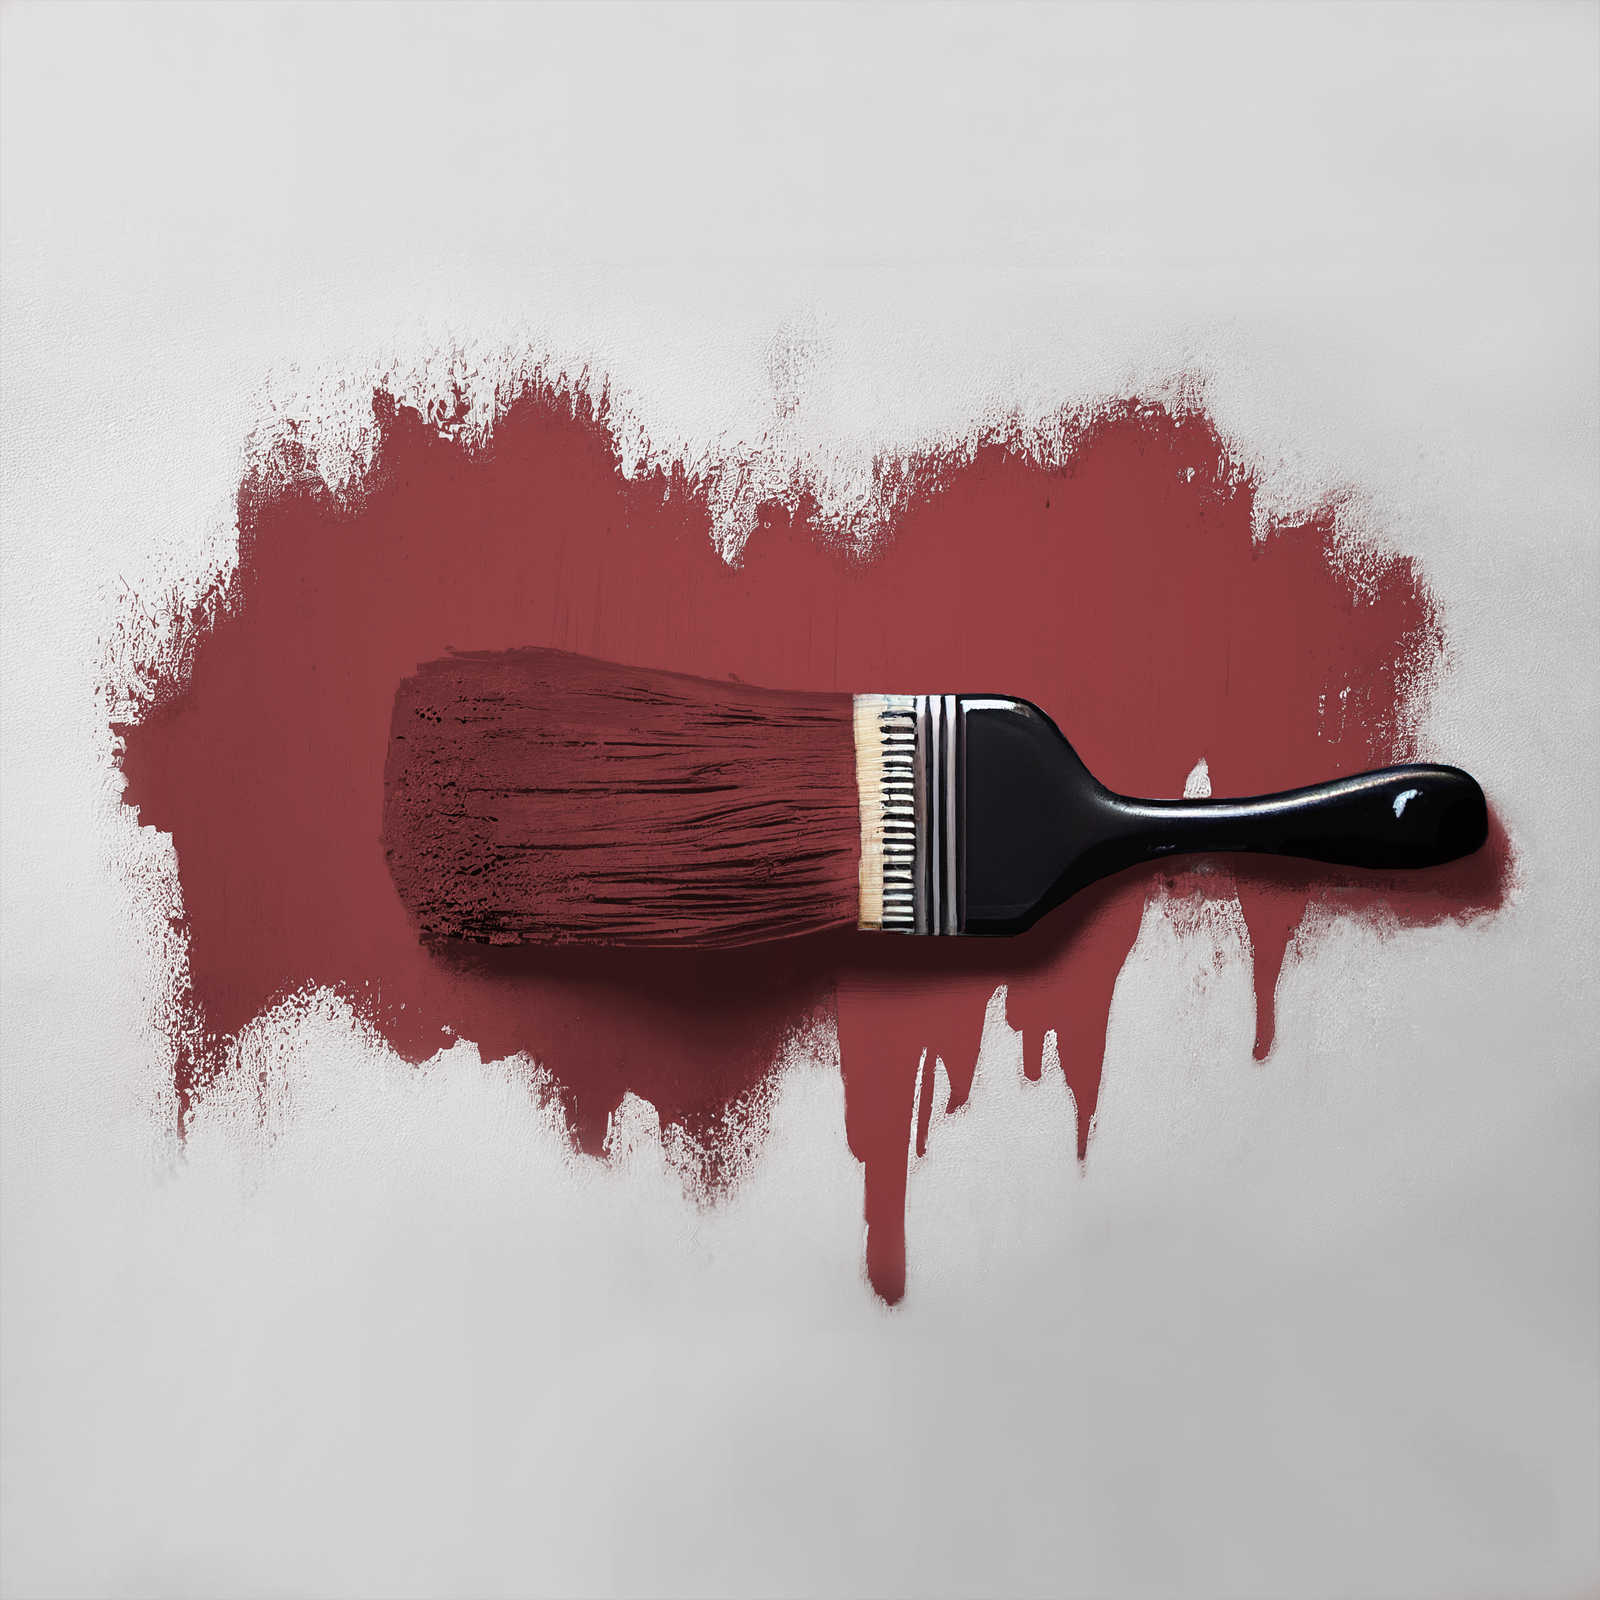             Peinture murale TCK7006 »Perky Pomegranate« en rouge foncé passionné – 2,5 litres
        